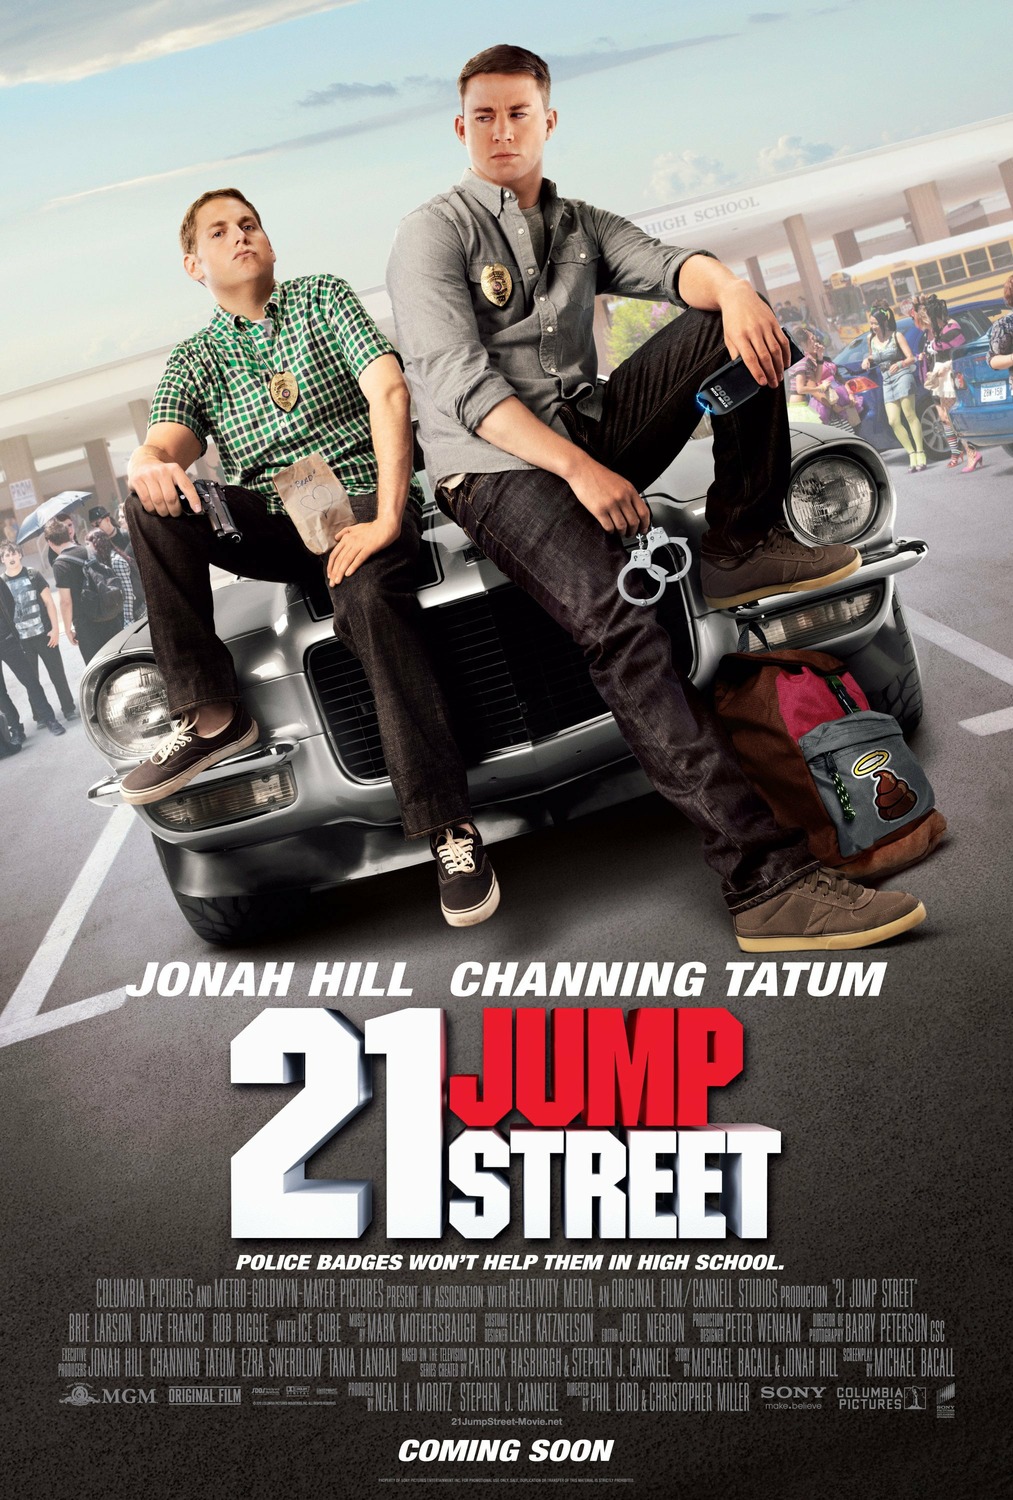 how many jump street movies